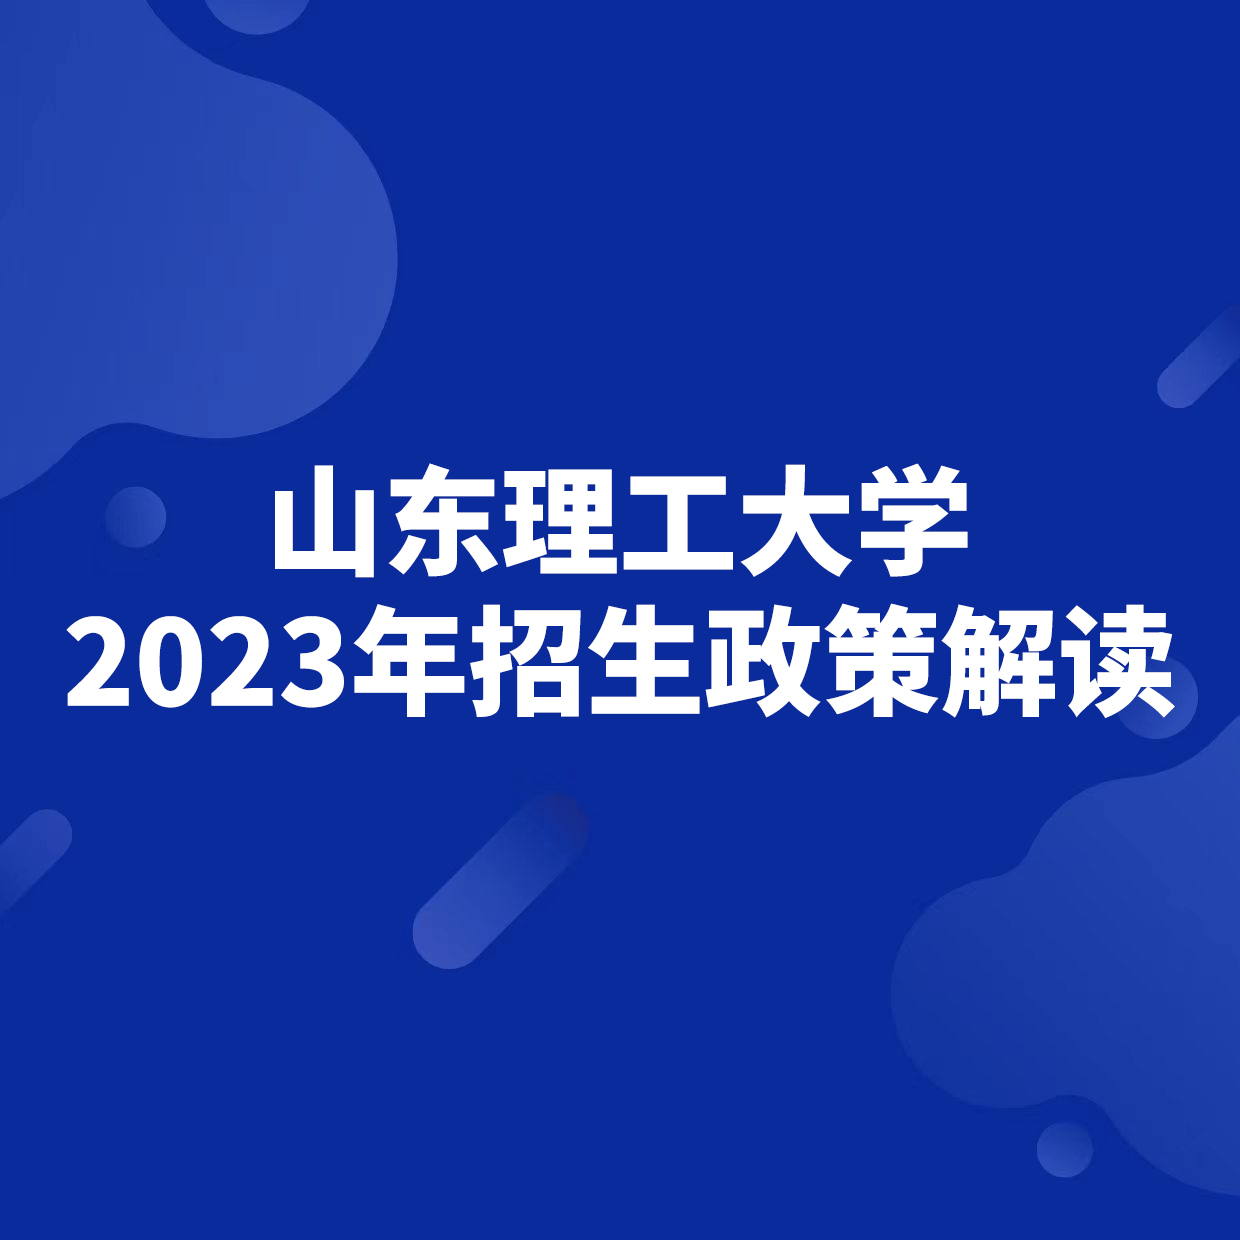 山东理工大学2023年招生政策解读